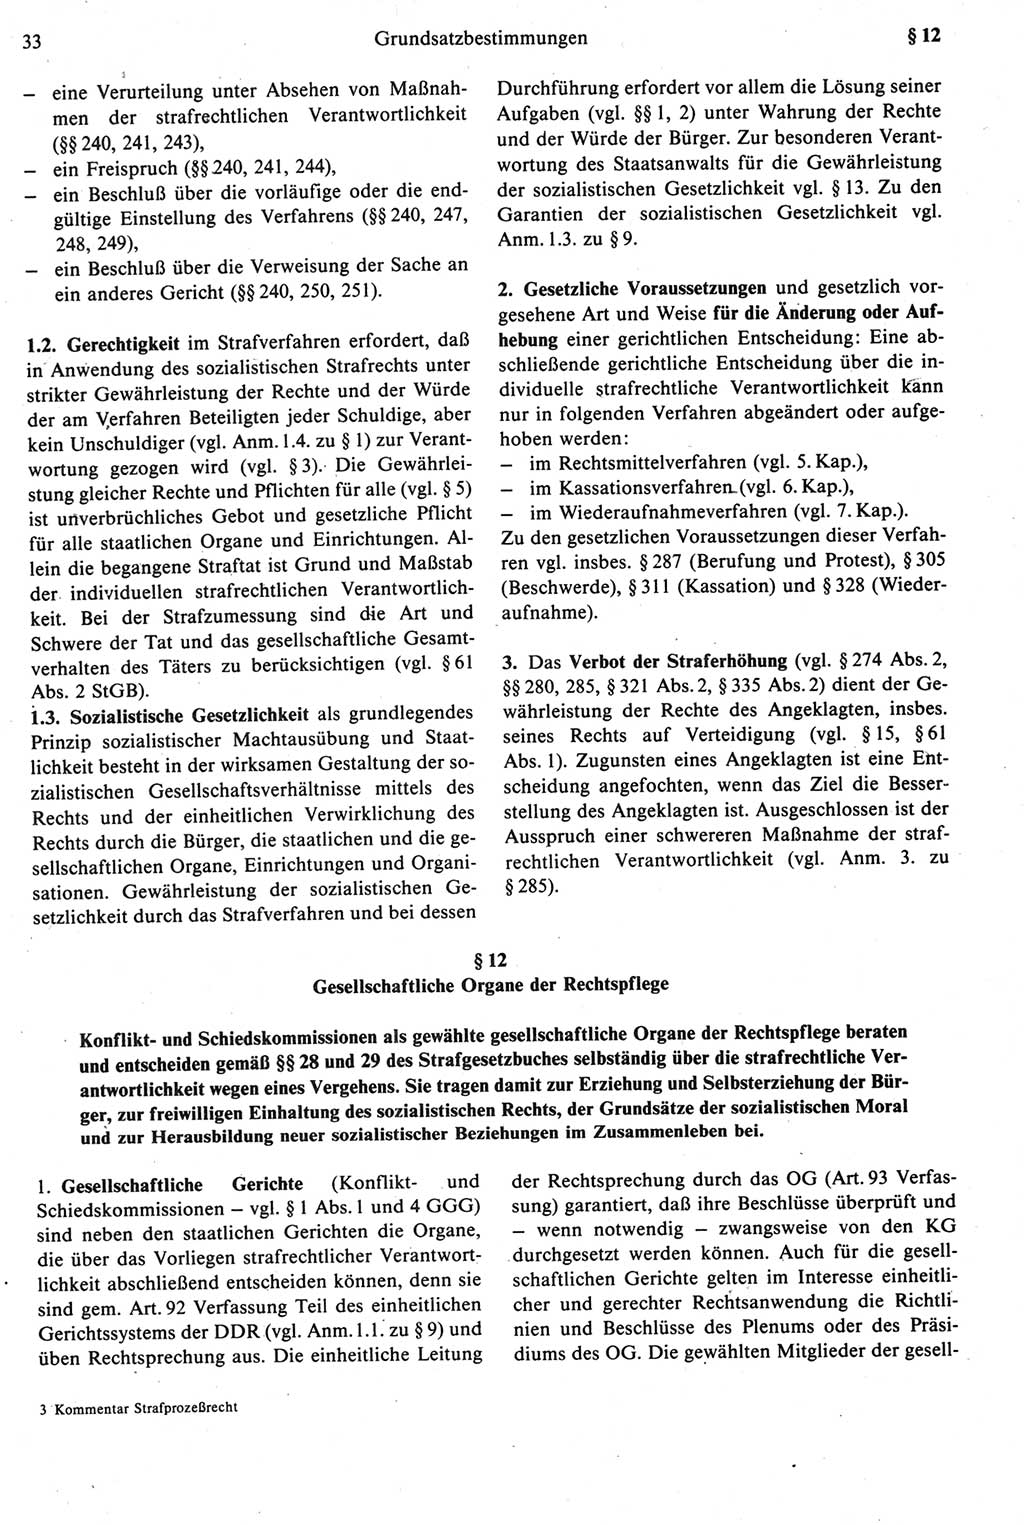 Strafprozeßrecht der DDR [Deutsche Demokratische Republik], Kommentar zur Strafprozeßordnung (StPO) 1987, Seite 33 (Strafprozeßr. DDR Komm. StPO 1987, S. 33)